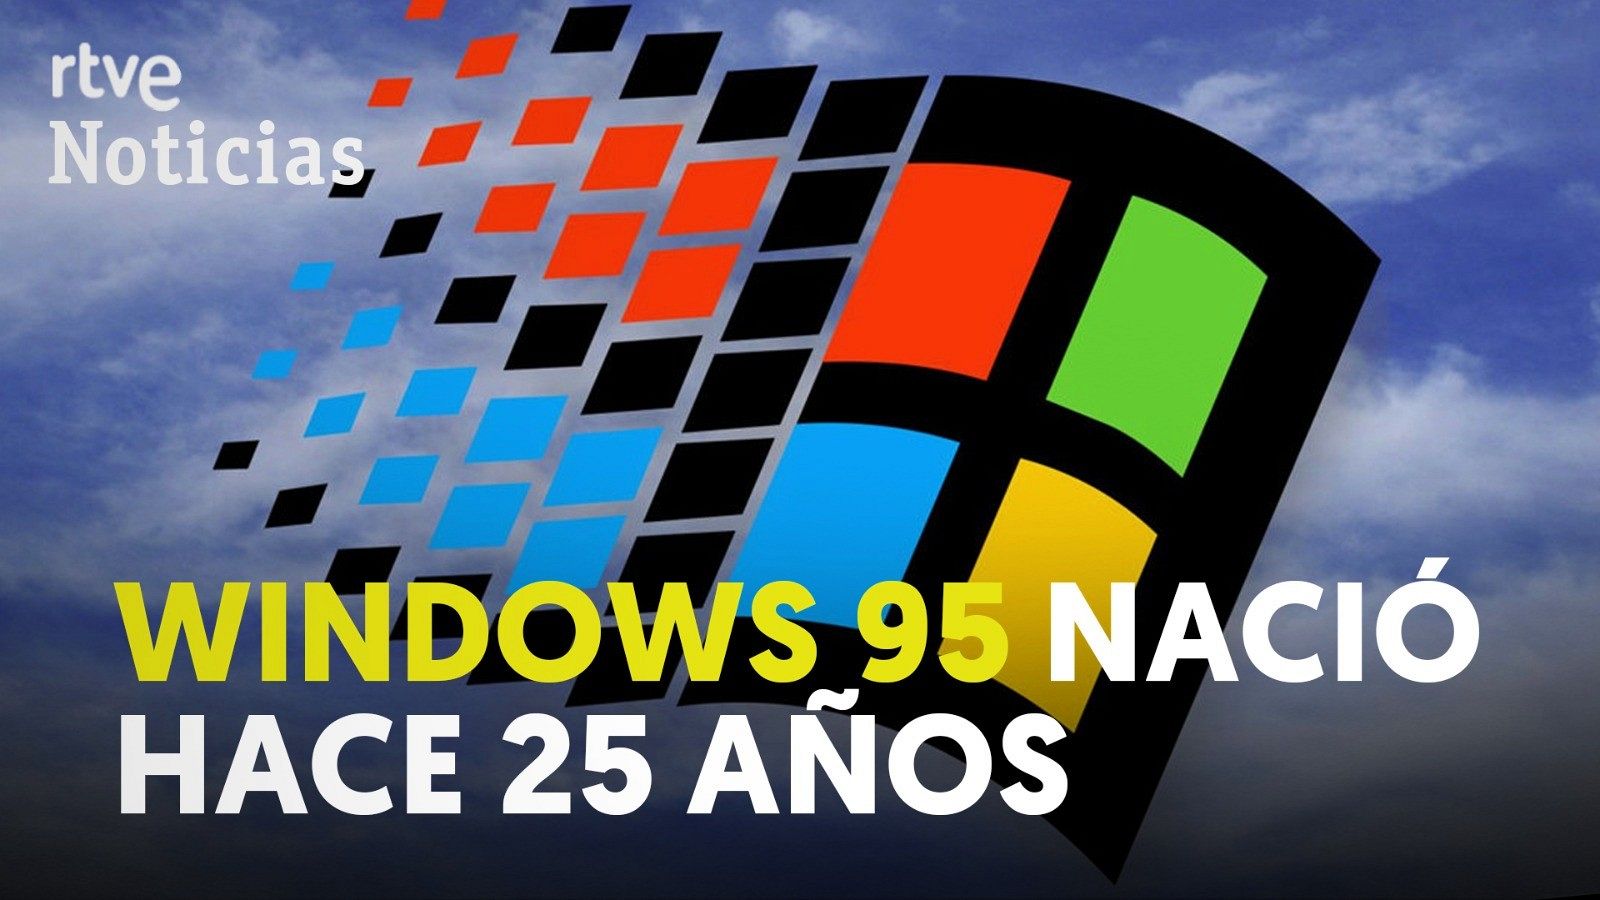 El sistema operativo Windows 95 de Microsoft cumple hoy 25 años